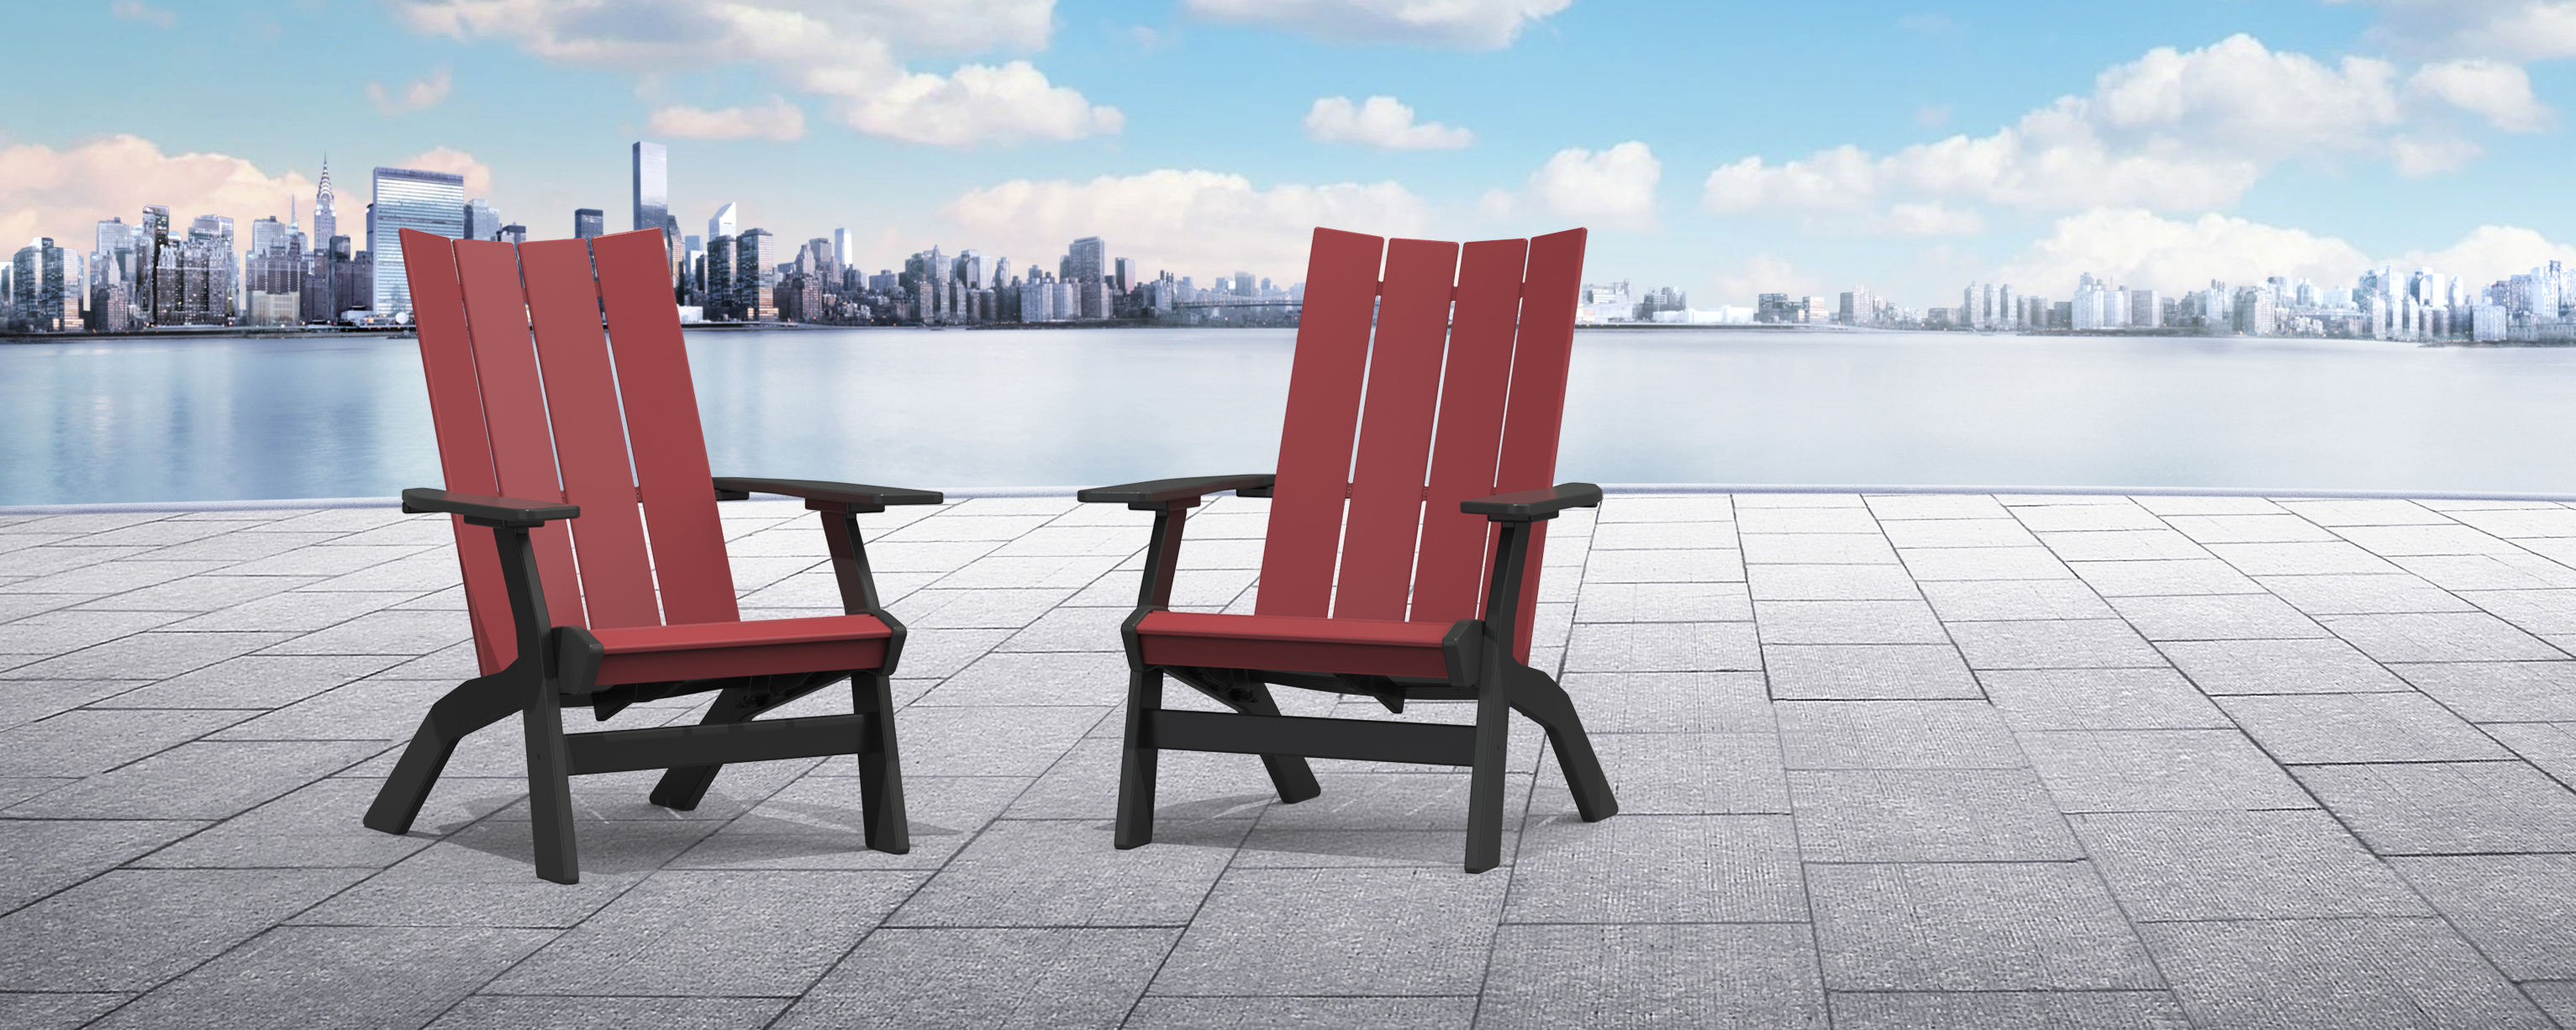 Beachfront chairs